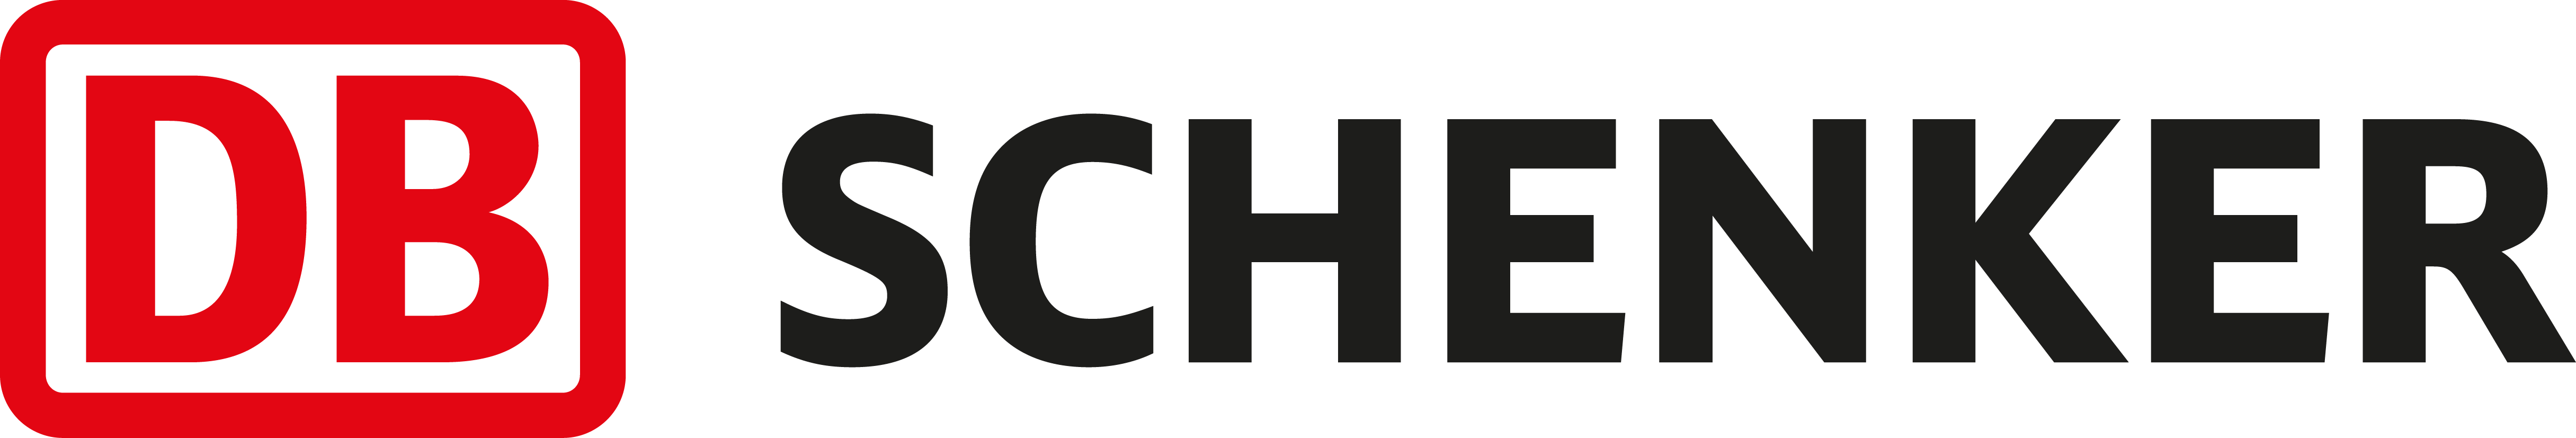 Db Schenker Standardlogga Data Logotyp